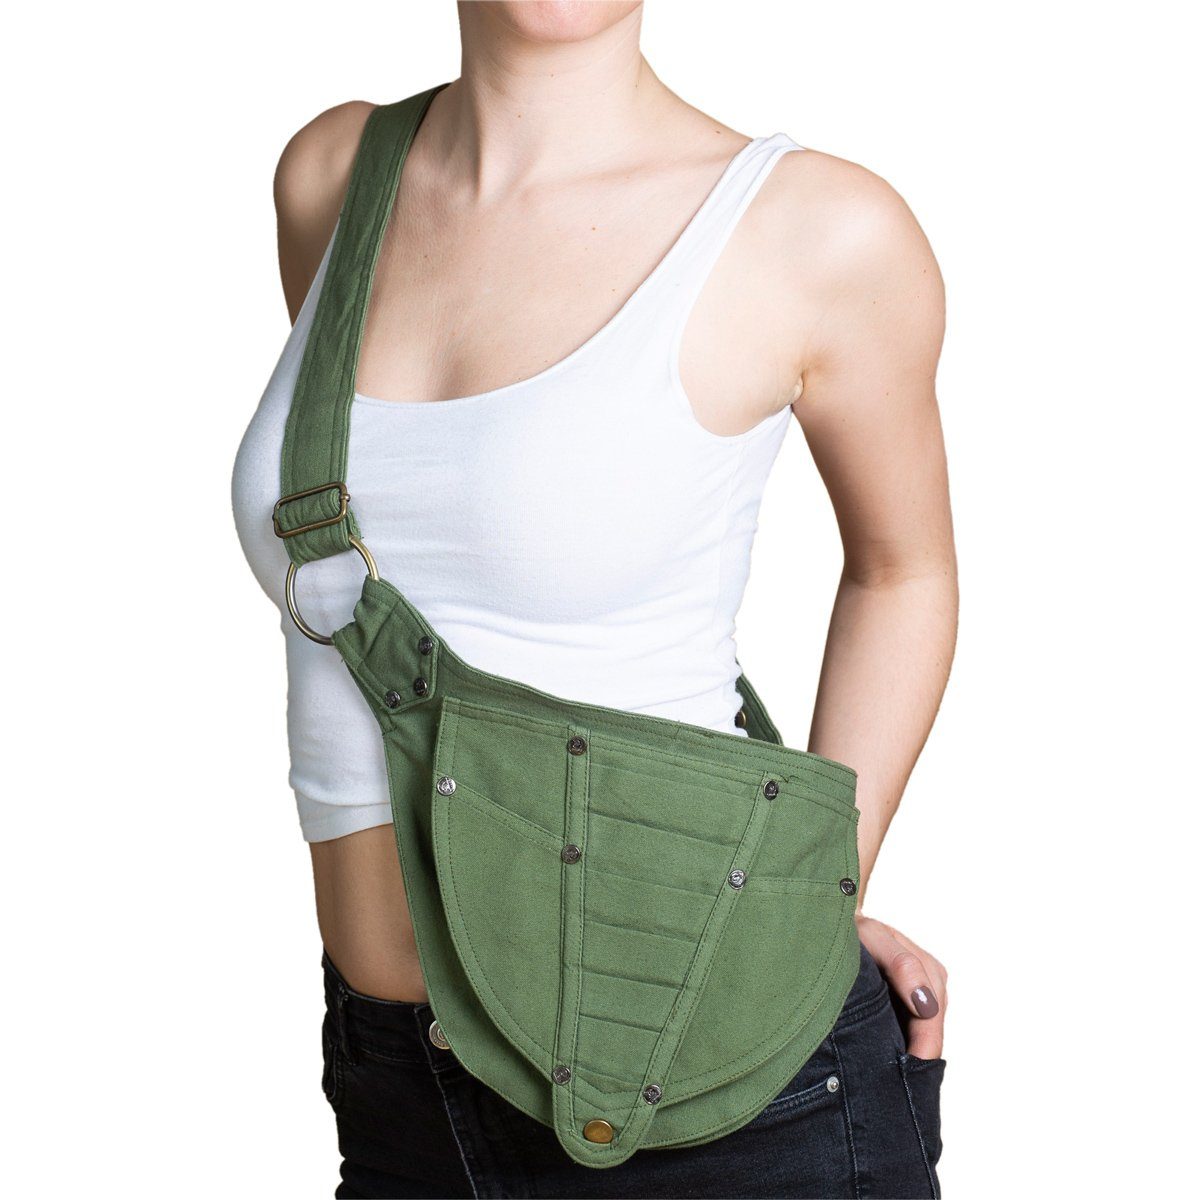 PANASIAM Bauchtasche Geräumige Gürteltasche lässt 2 oder Baumwolle tragen kleine mit Hüfttasche, Umhängetasche Innentaschen Grün als aus fester Bauchtasche sich